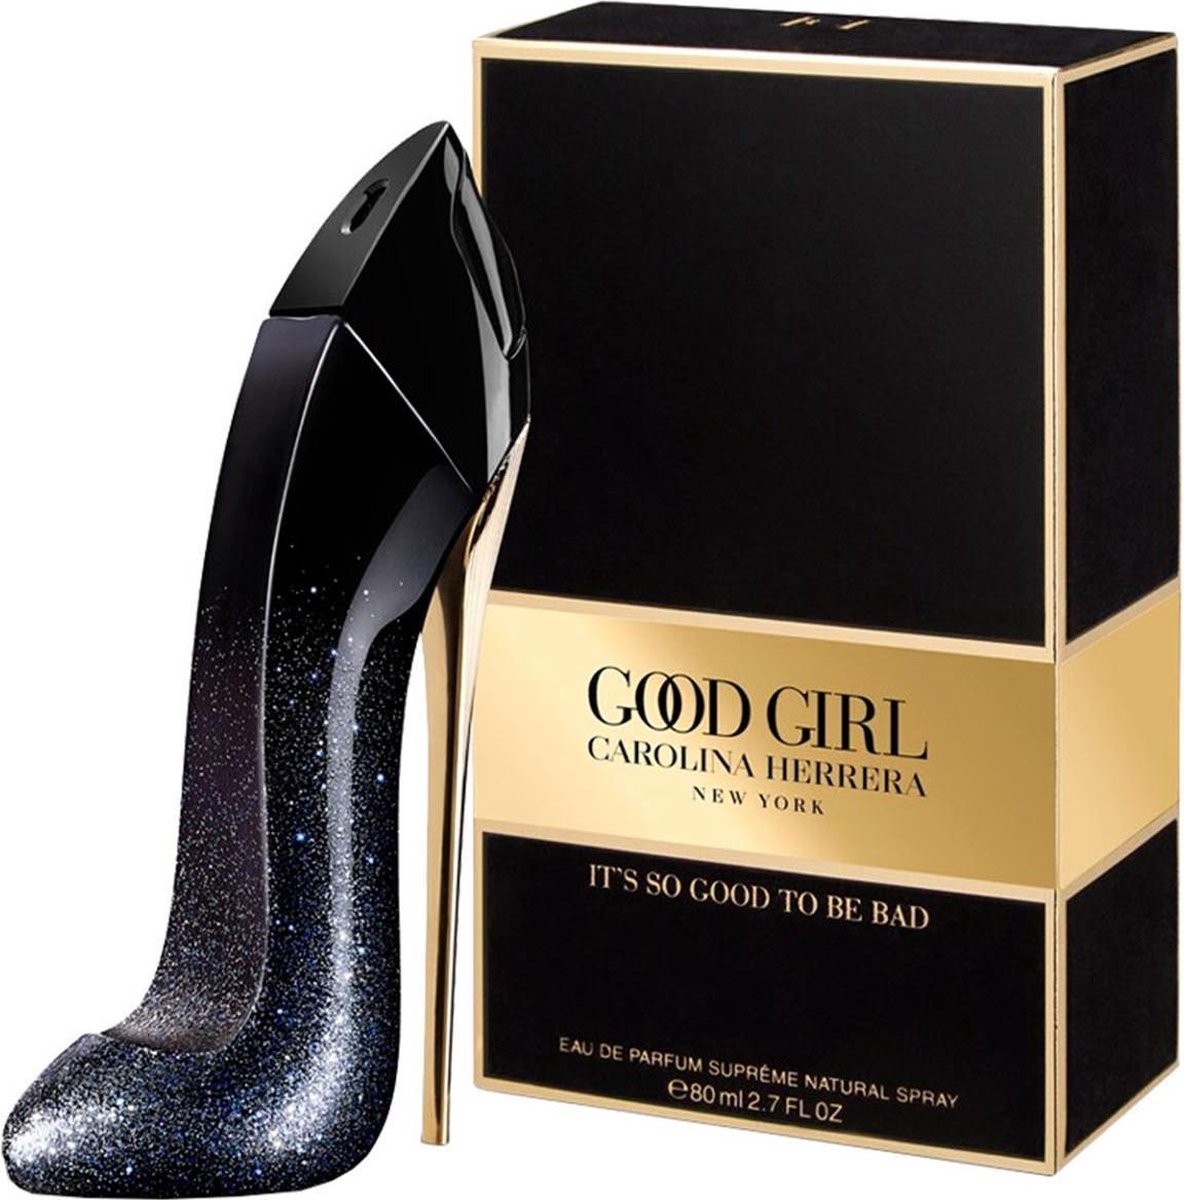 Carolina Herrera Good Girl Suprême Eau de Parfum 80ml | bol.com